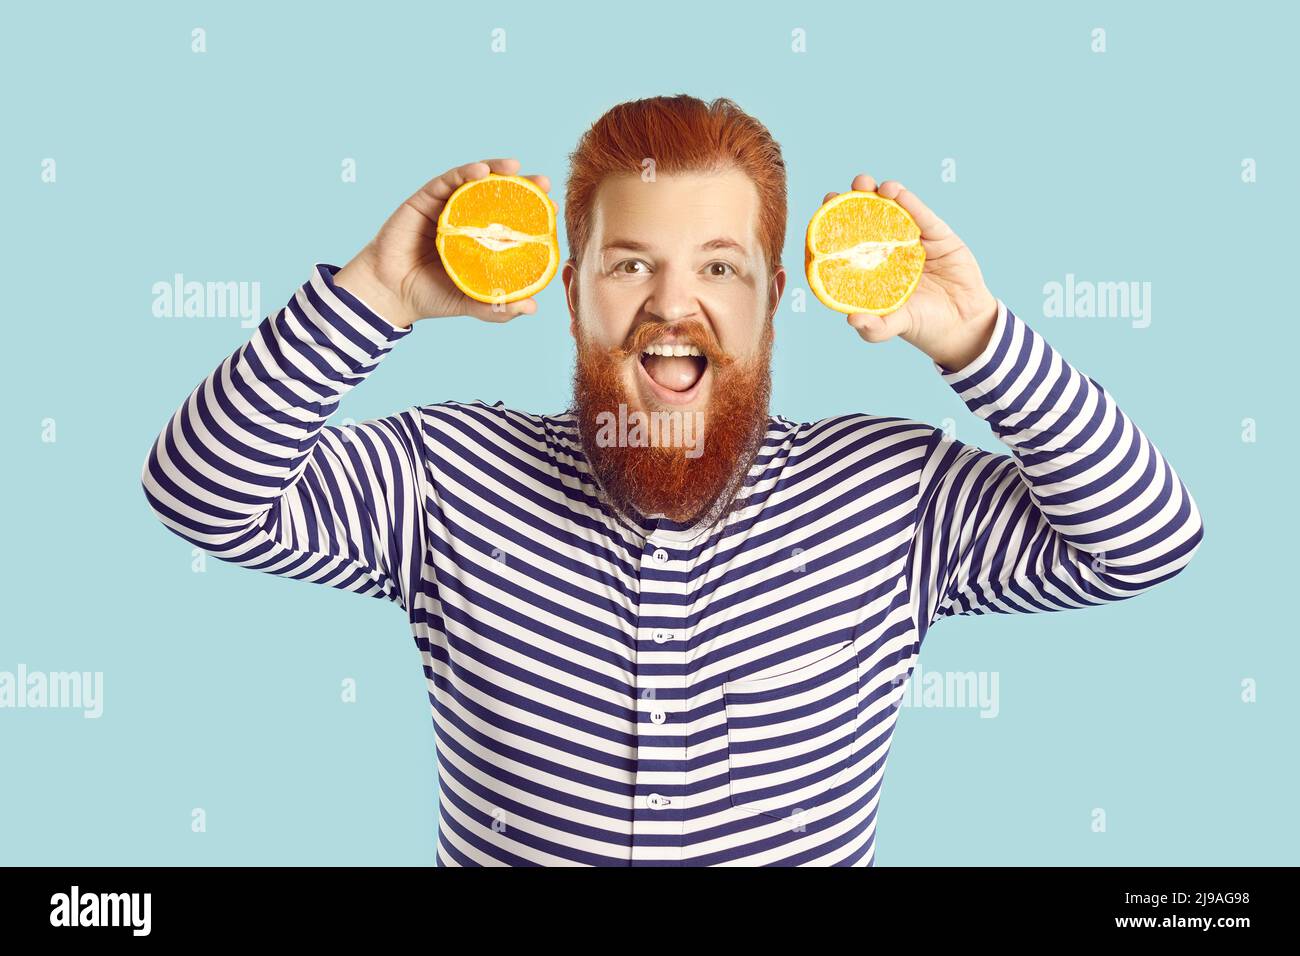 Lustig glücklich fetten Mann, der gerne frisches Obst isst, hält zwei orange Hälften und lächelt Stockfoto